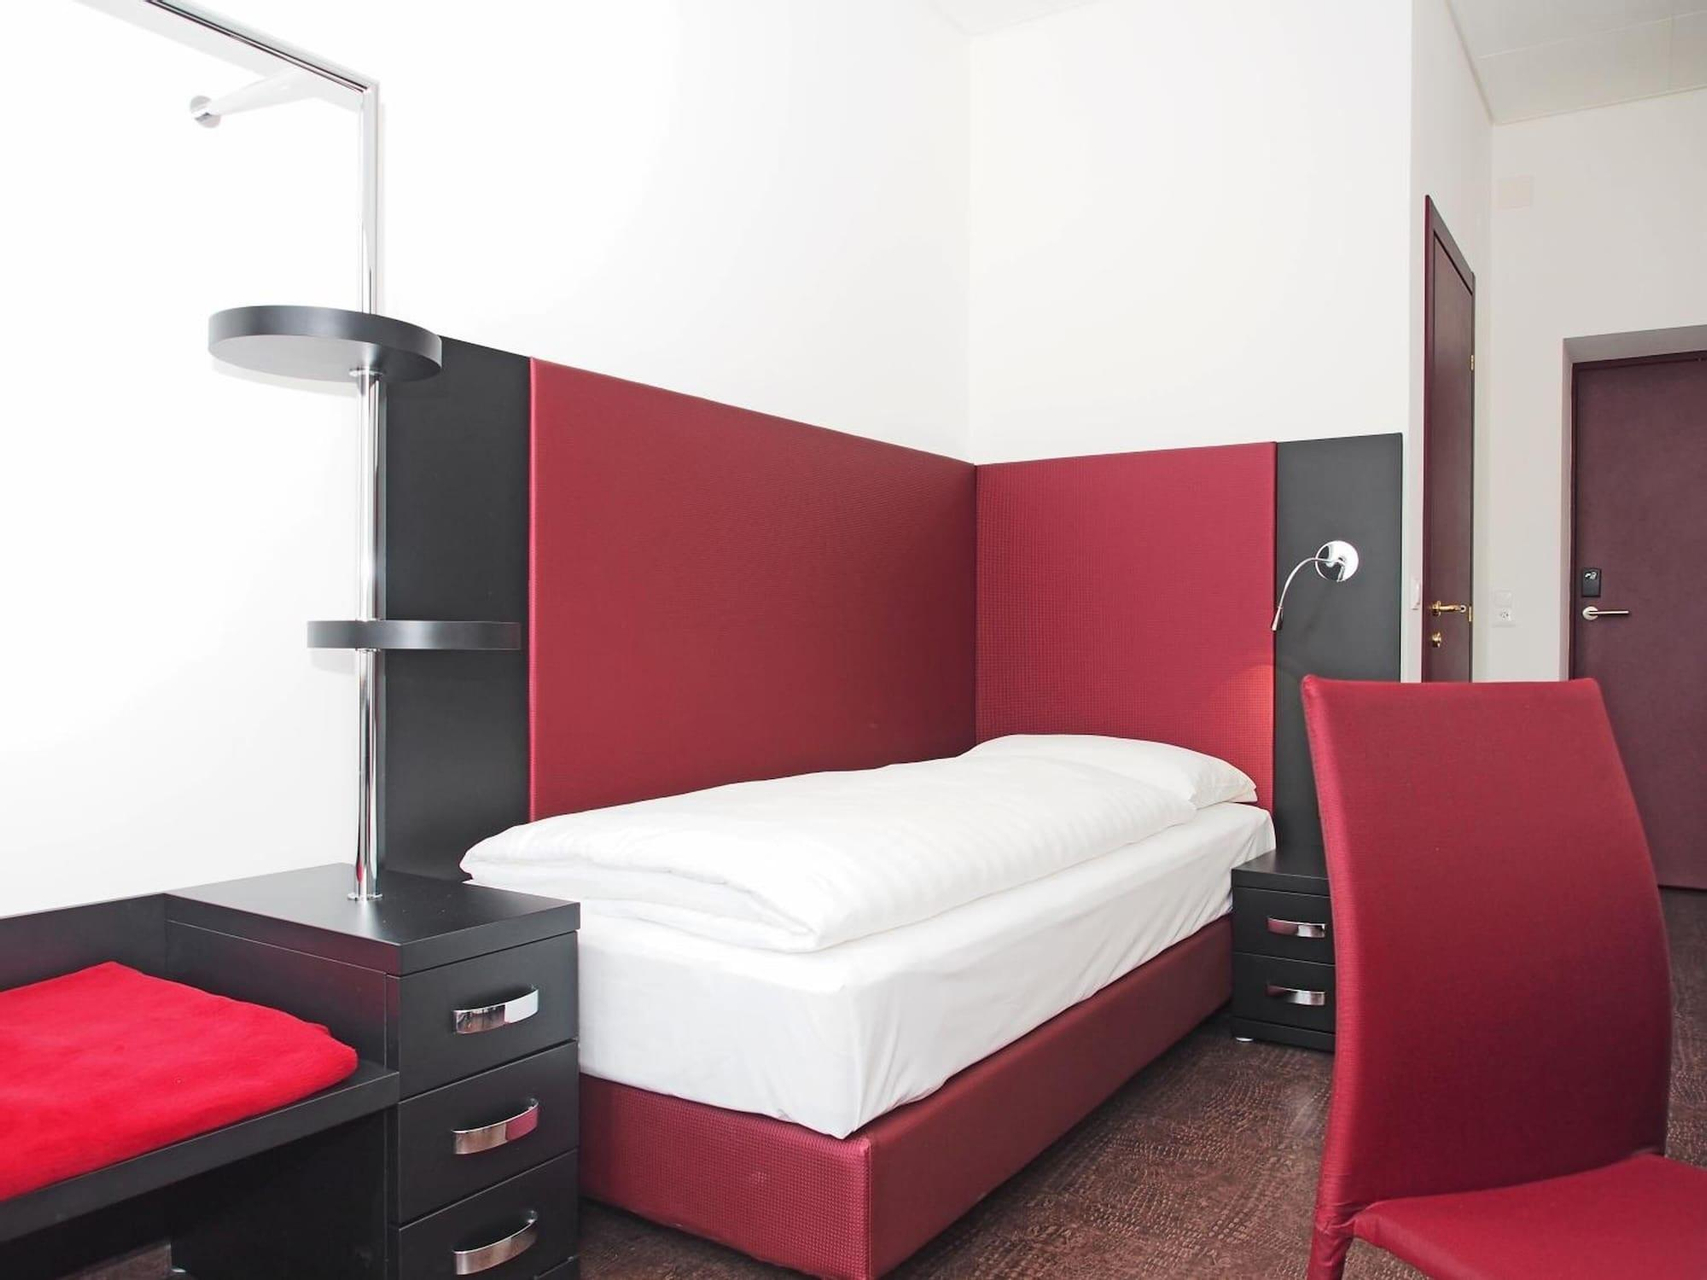 Bedroom 3, Hotel Garni Rio, Locarno